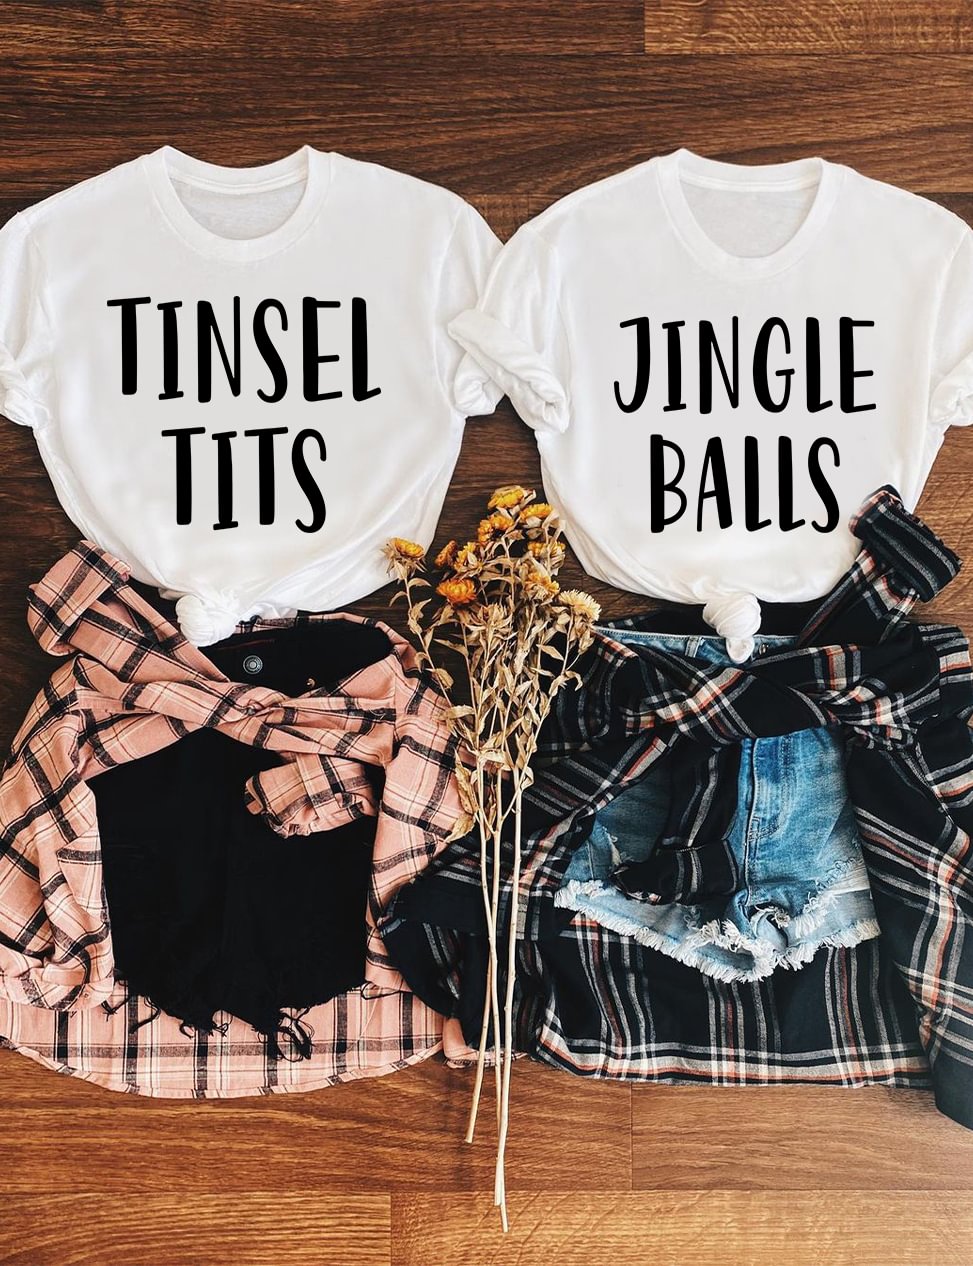 Jingle Balls and Tinsel Tits T-Shirt